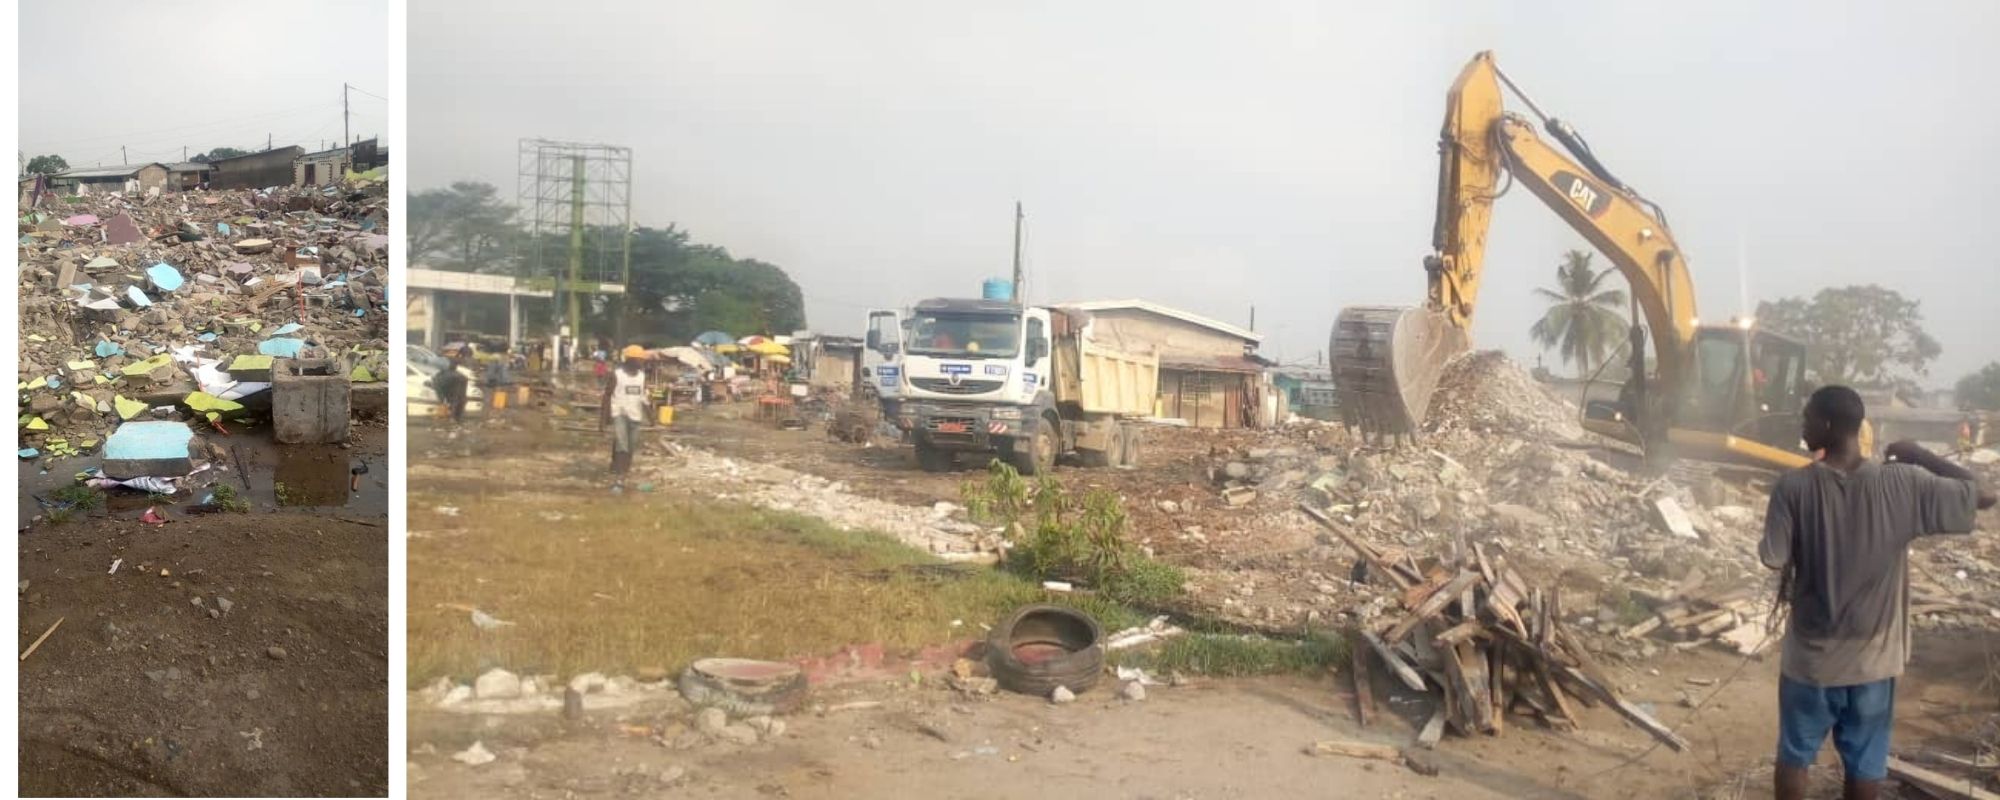 Alerte autour d’une situation d’éviction forcée au quartier Newtown Aéroport à Douala, Cameroon